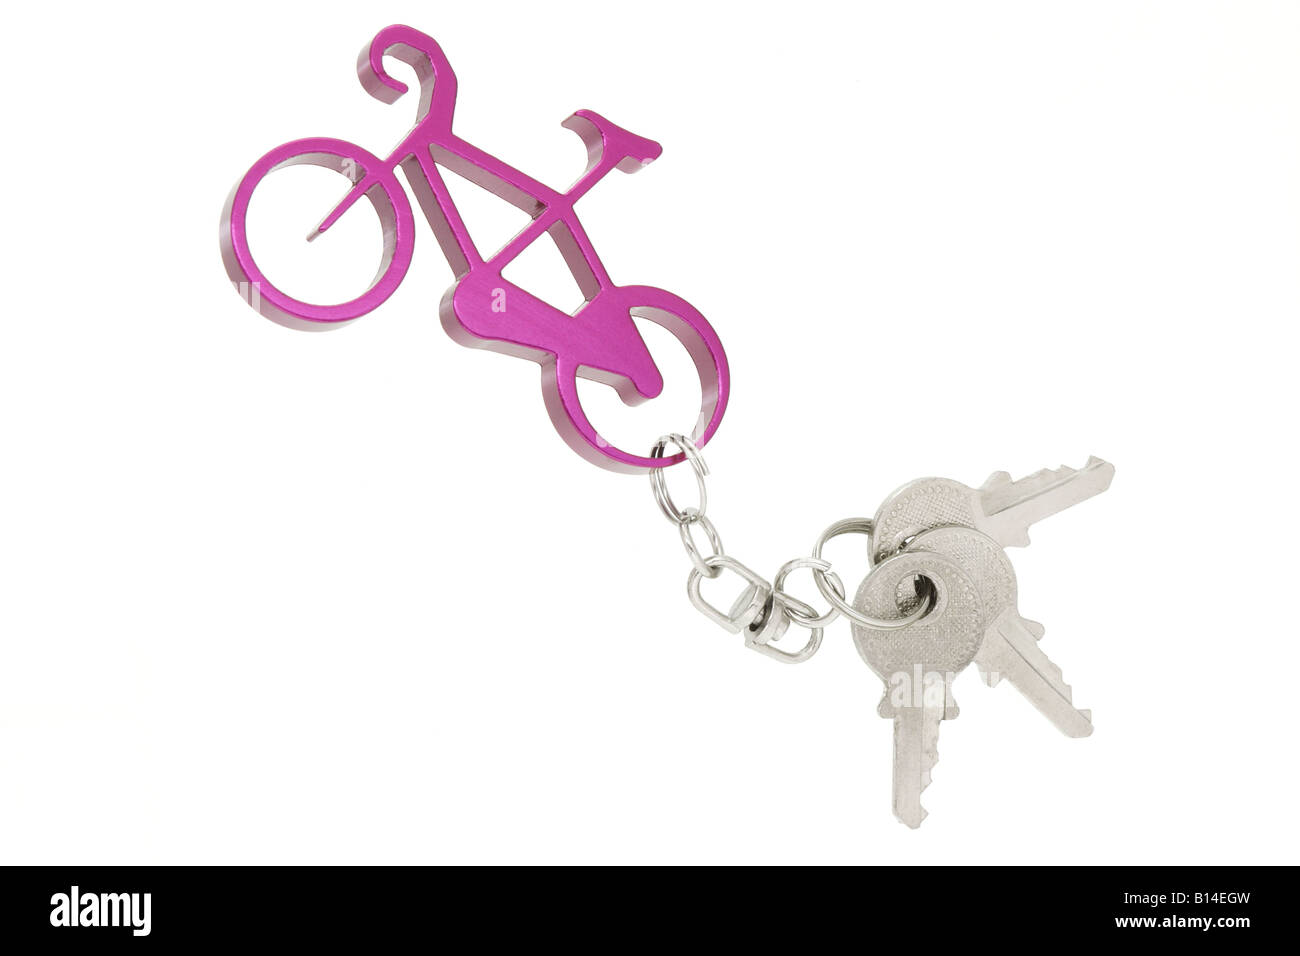 Fahrrad-Schlüsselanhänger mit einem Satz von Schlüsseln Stockfoto